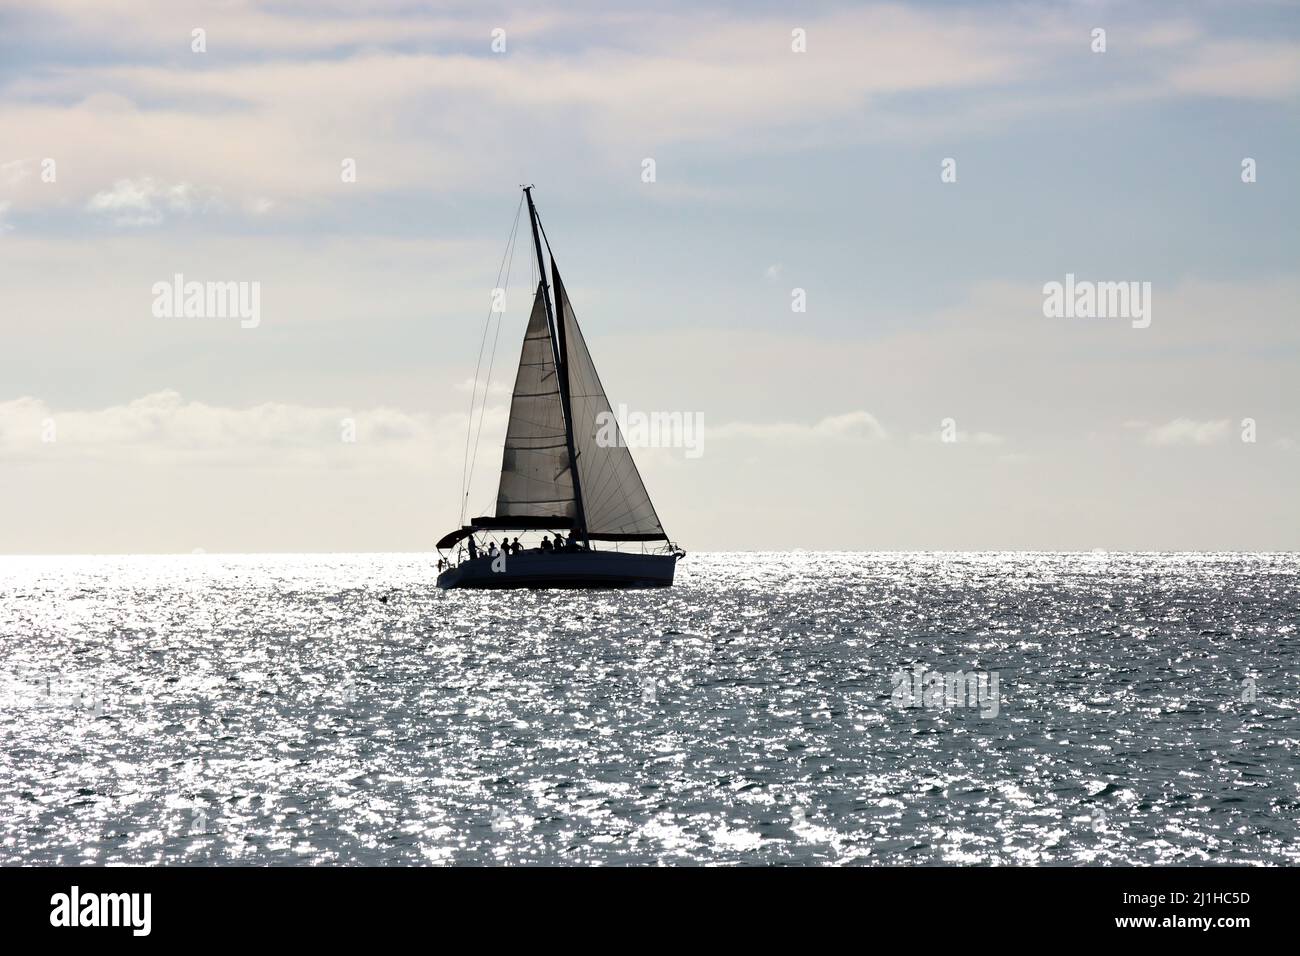 Segelschiff im Gegenlicht - Symbolbild für Freiheit und Fernweh, Jandia Playa, Fuerteventura, Espagnol Banque D'Images